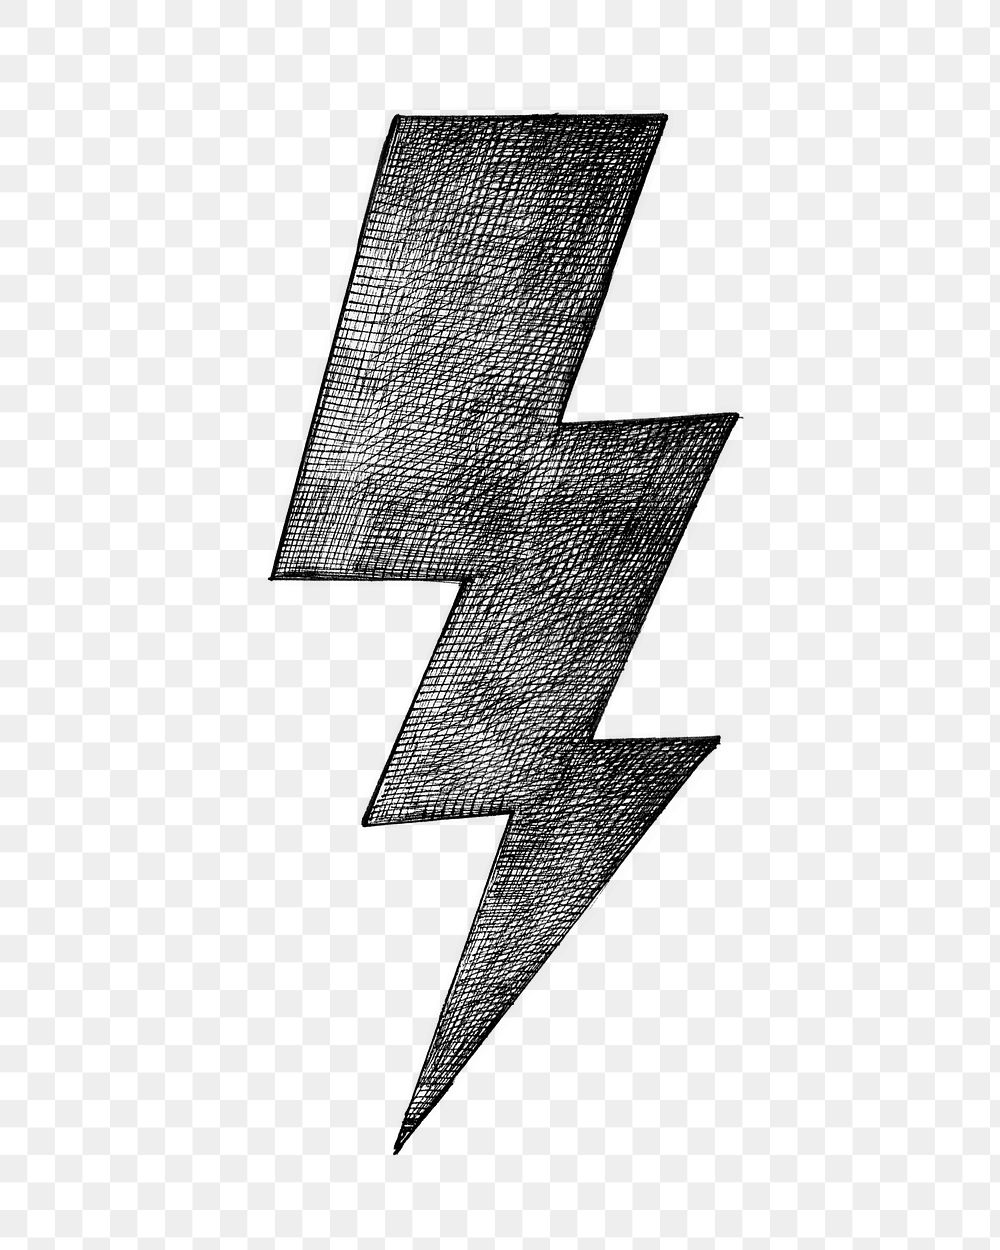 Lightning bolt png vintage sticker illustration, transparent background